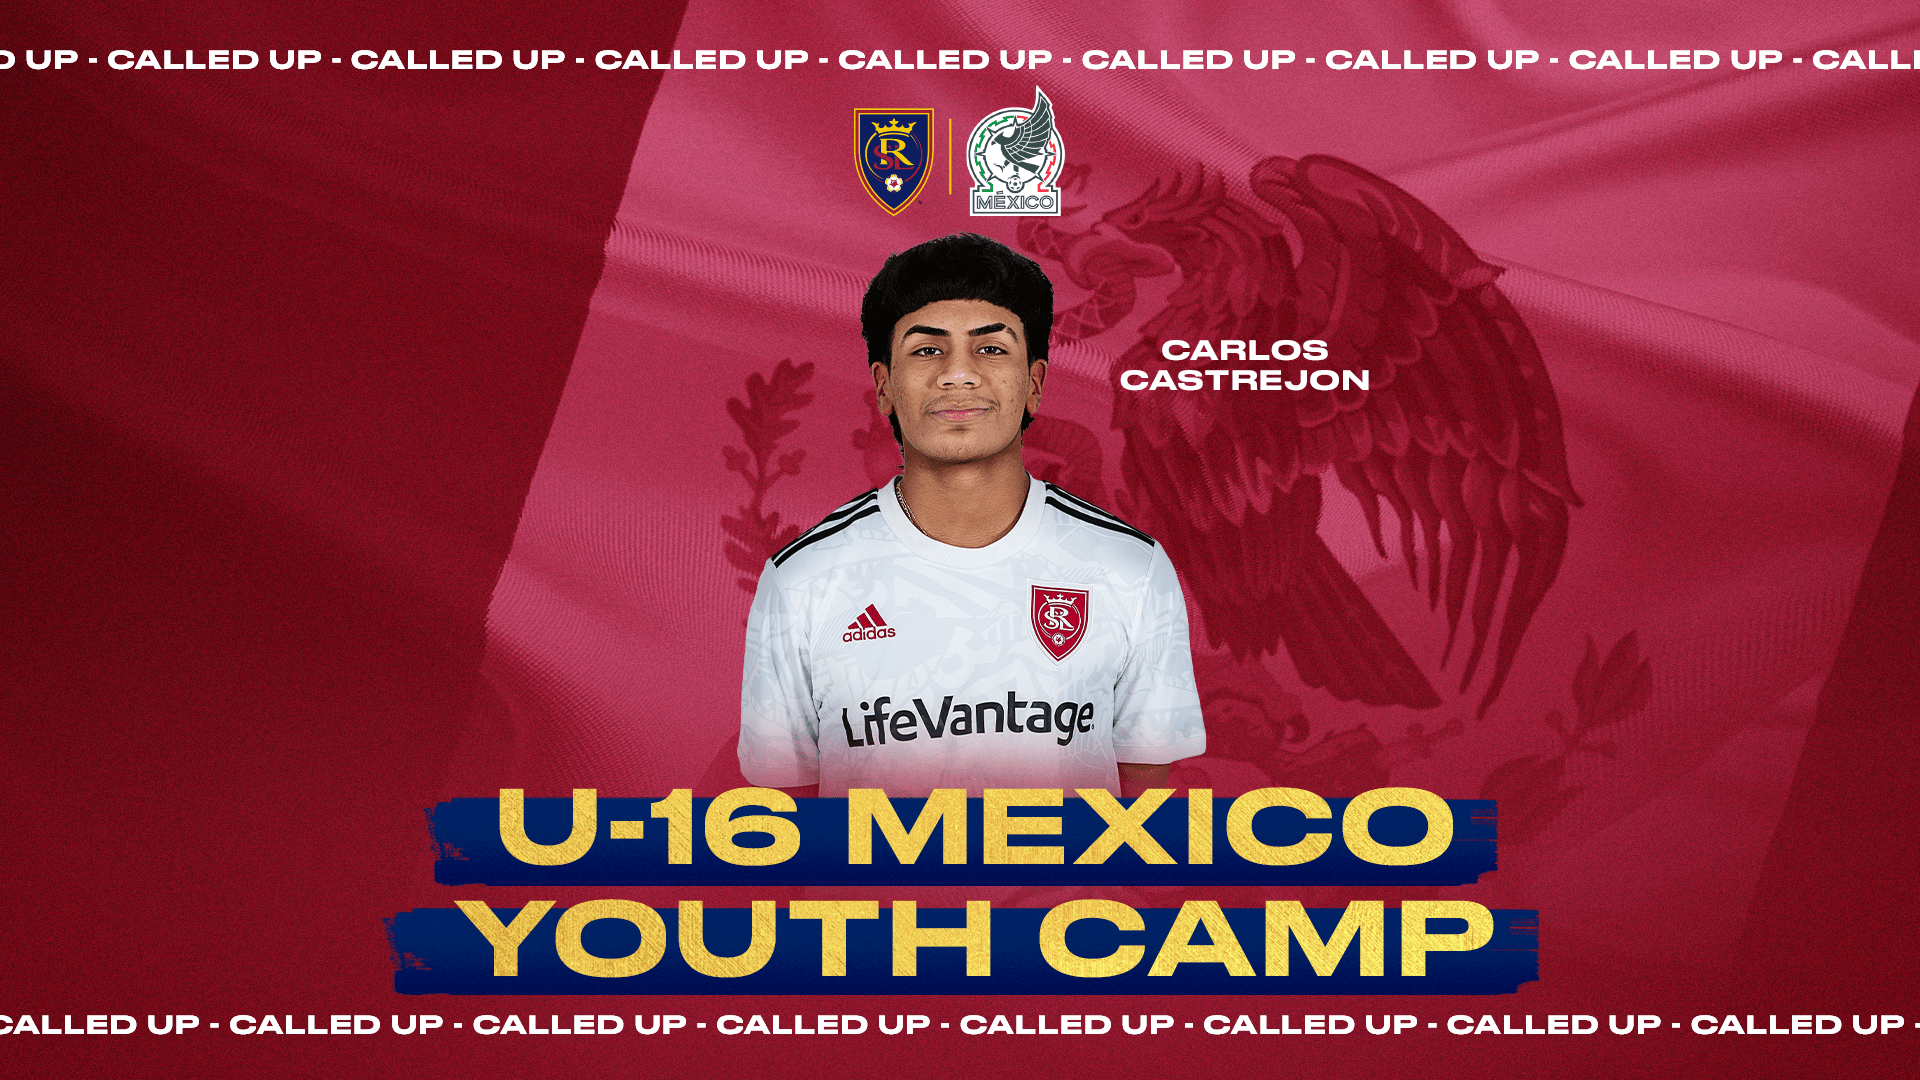 Carlos Castrejon a fost numit în echipa națională a Mexicului U-16